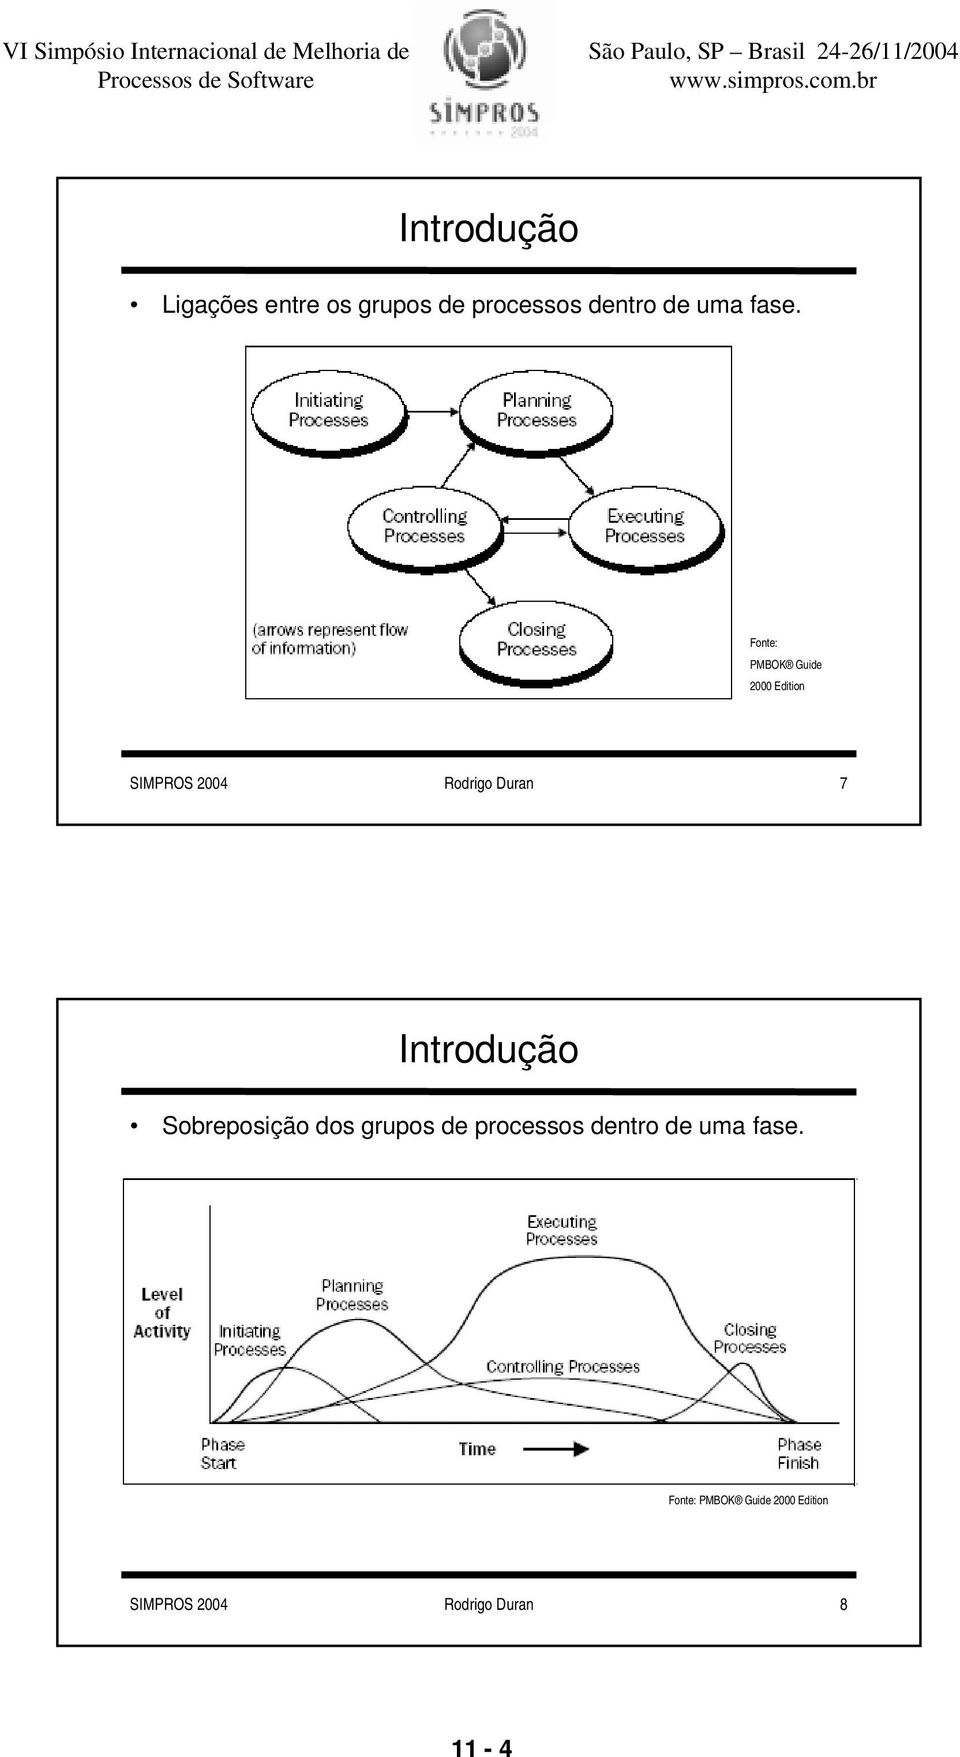 Sobreposição dos grupos de processos dentro de uma fase.